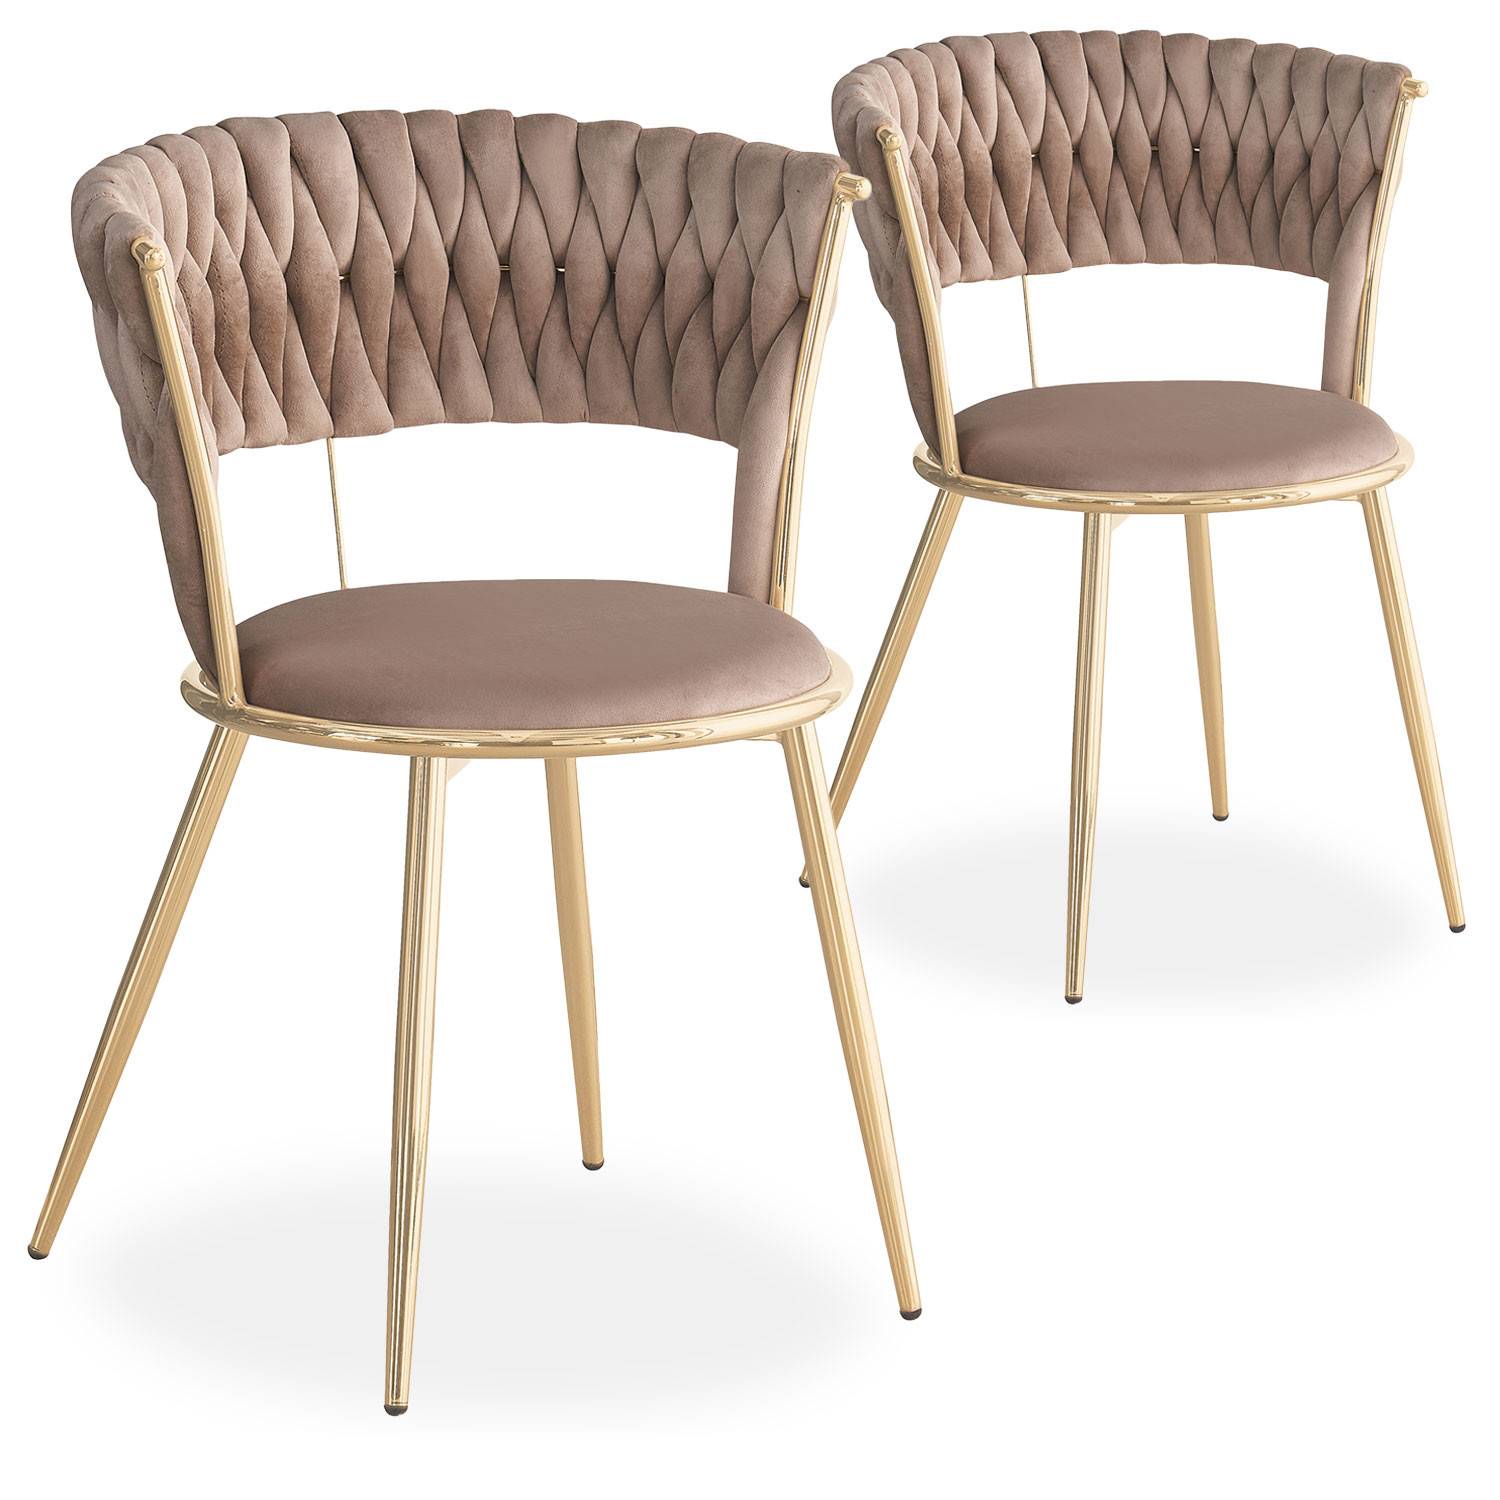 Lote de 2 sillas de diseño Varadian de terciopelo topo y metal dorado con respaldo redondeado